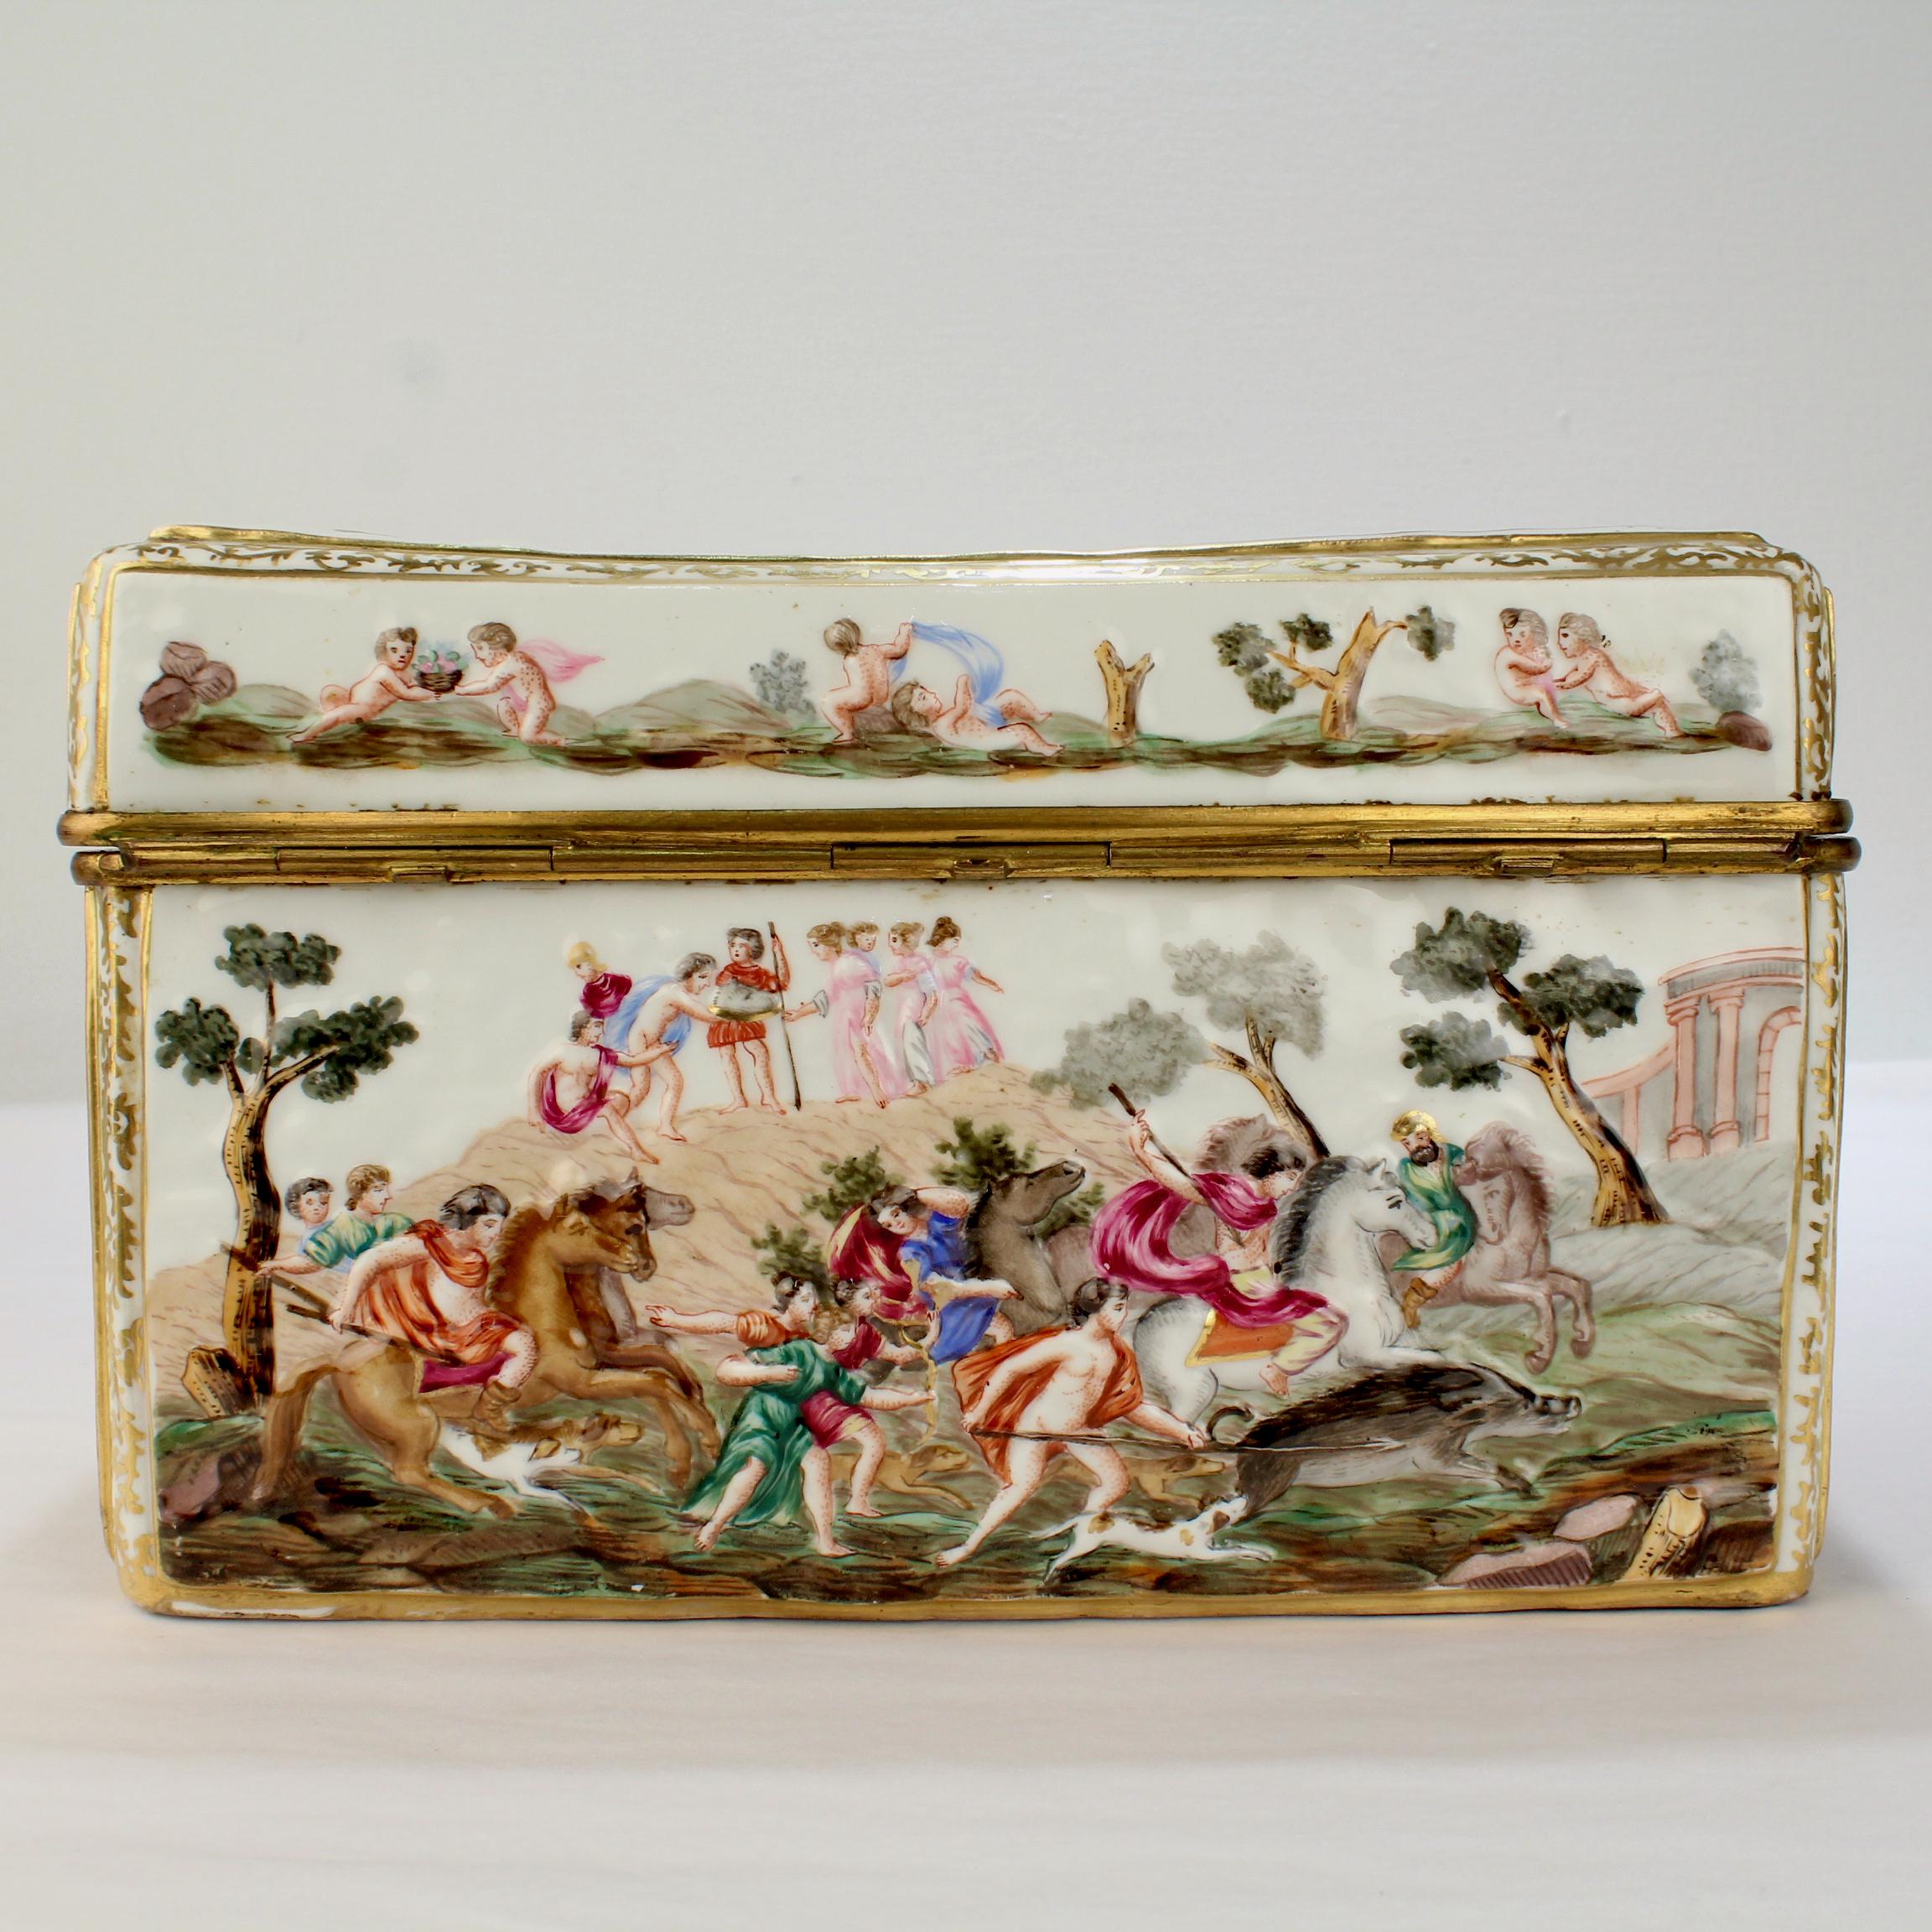 Baroque Large Antique Capodimonte Porcelain Meissen Style Porcelain Casket or Table Box